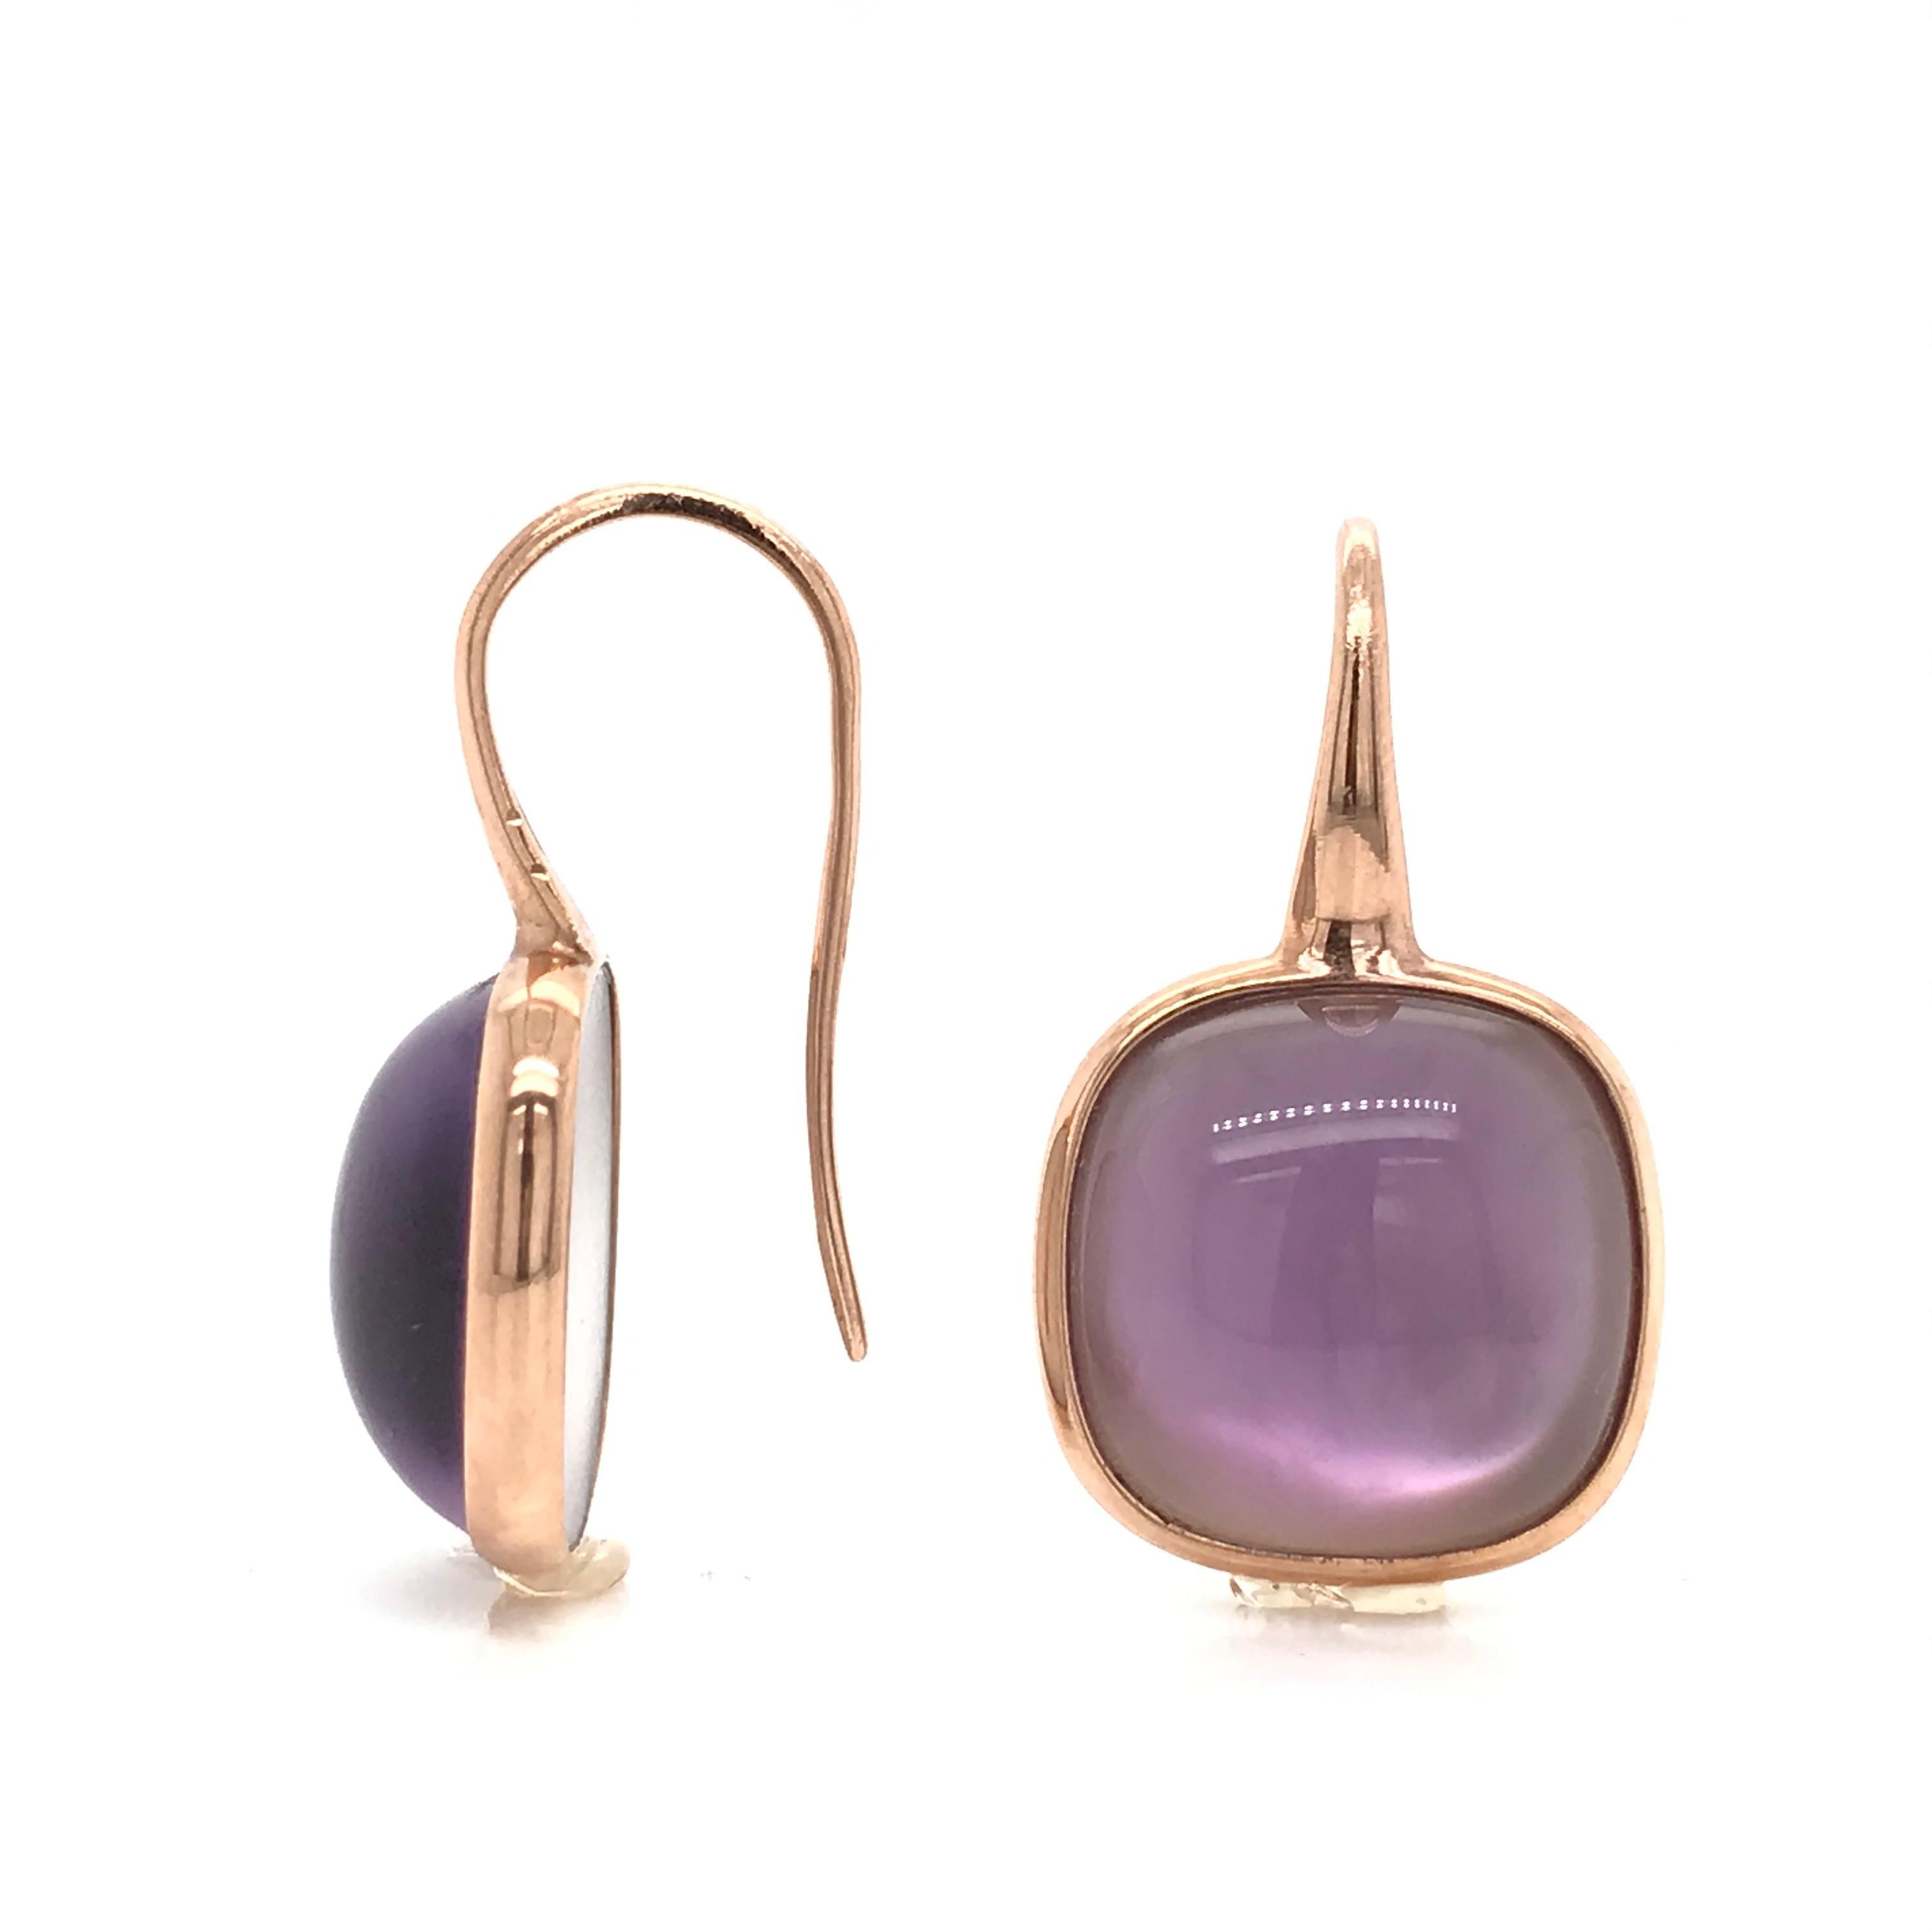 Amethyst on Pink Gold 18 K Drop Earring
Amethyst on mother of pearl
Weight on Pink Gold 3.20
Drop Earrings